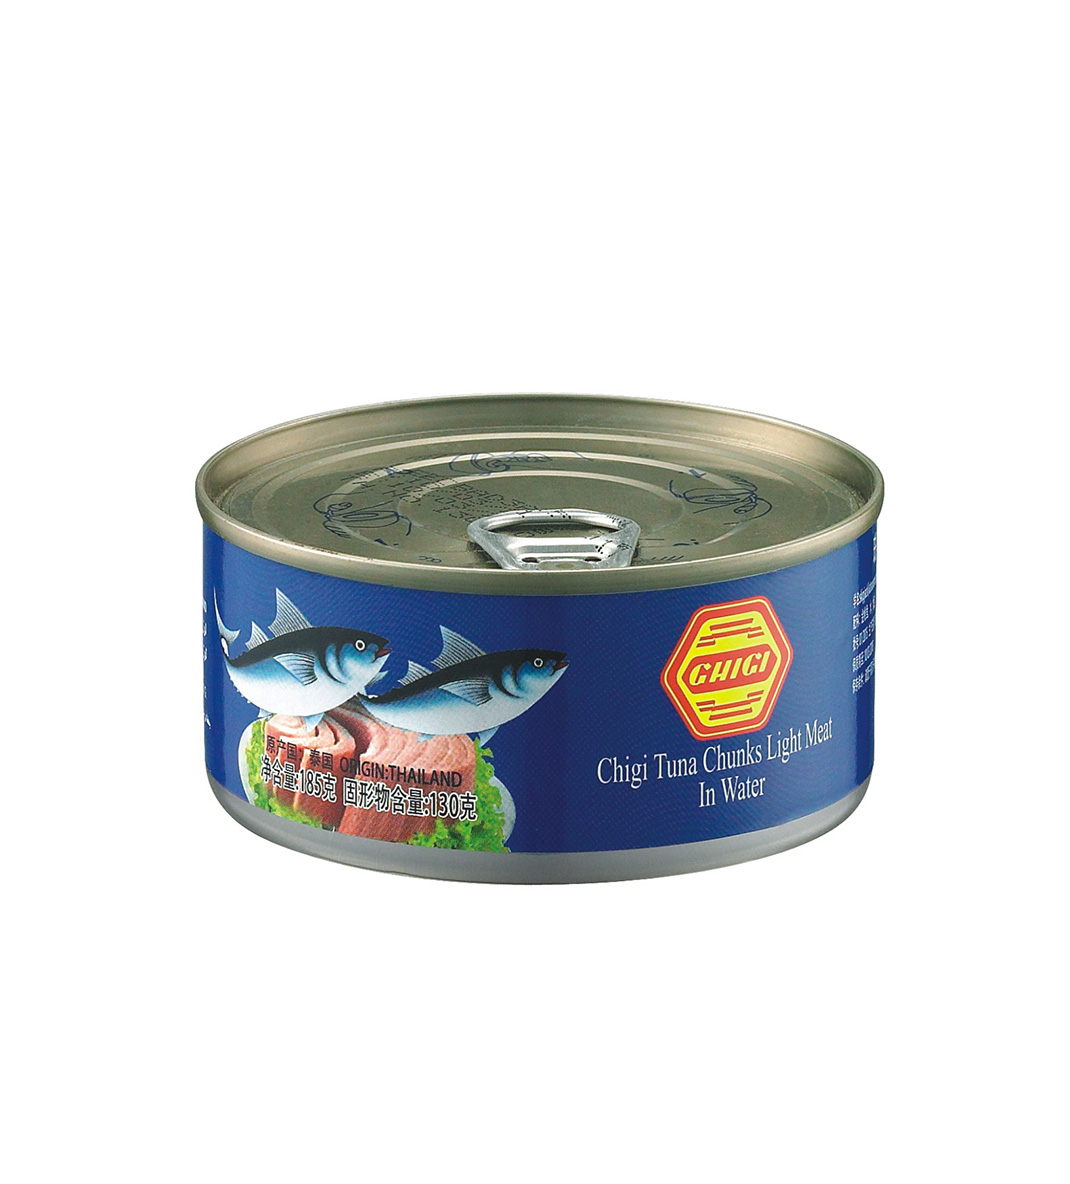 GHIGI White Meat Tuna Chunk in Water 